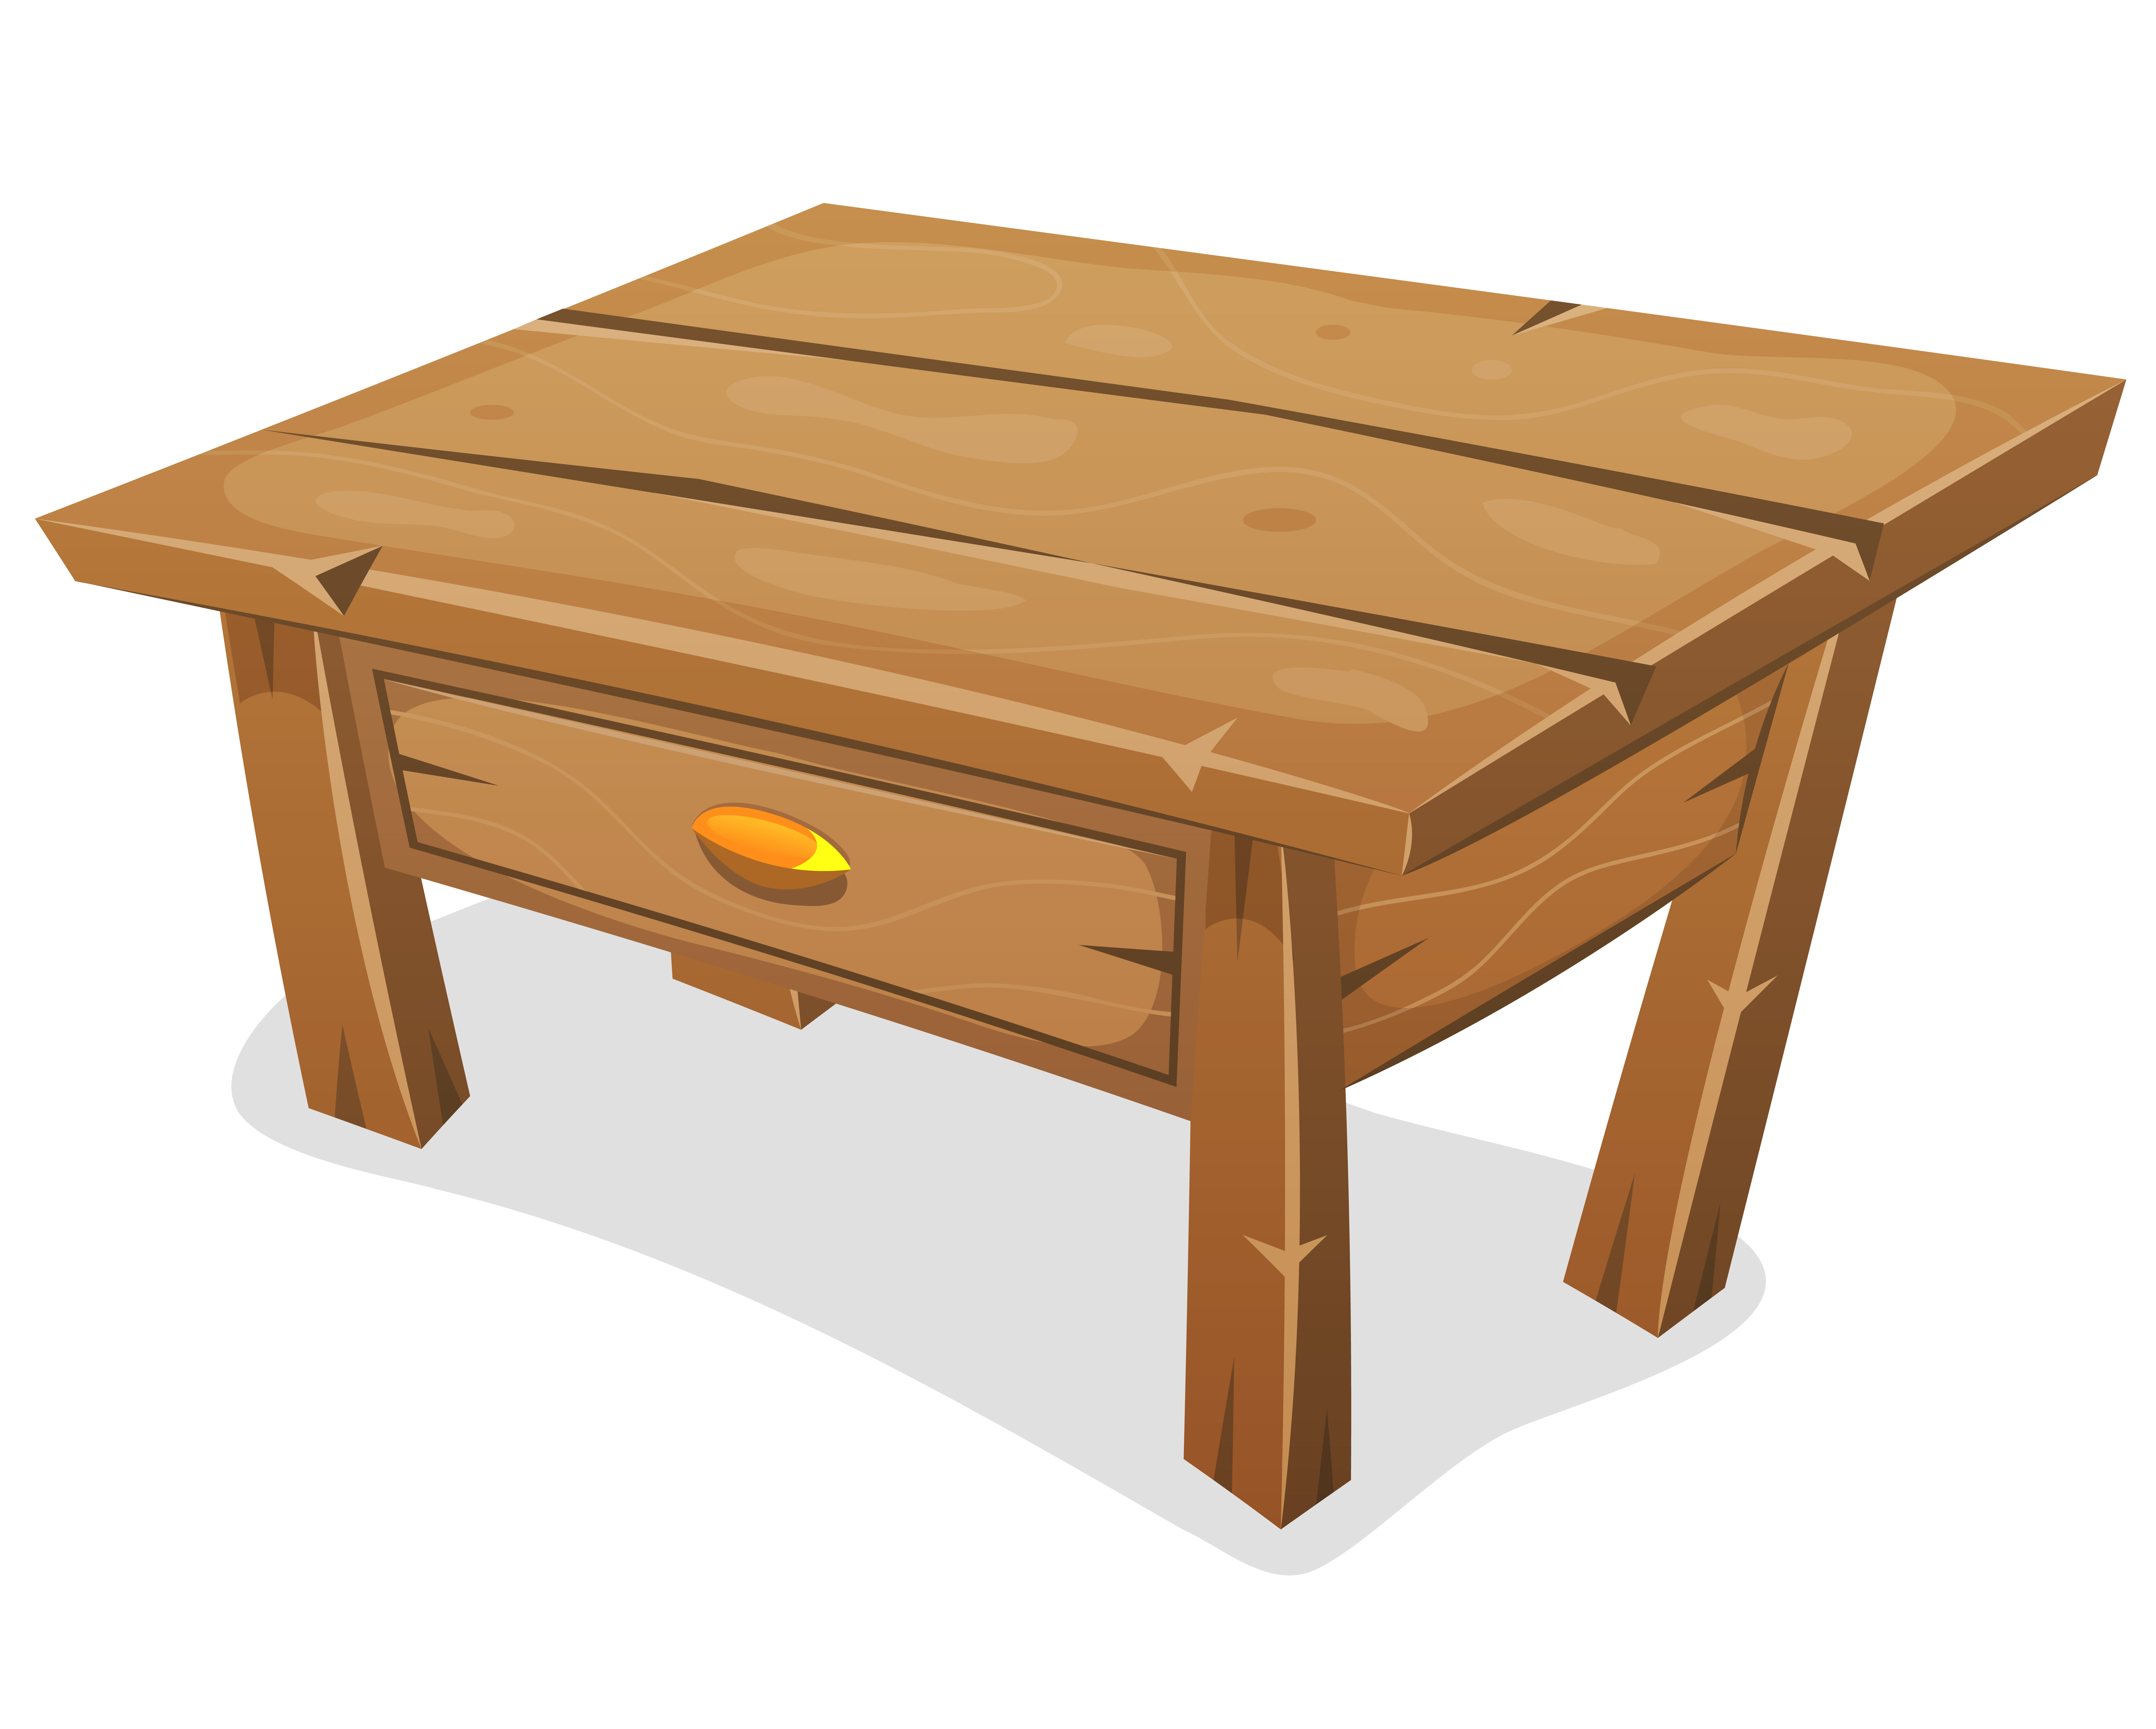 Иллюстрация стол деревянный растр